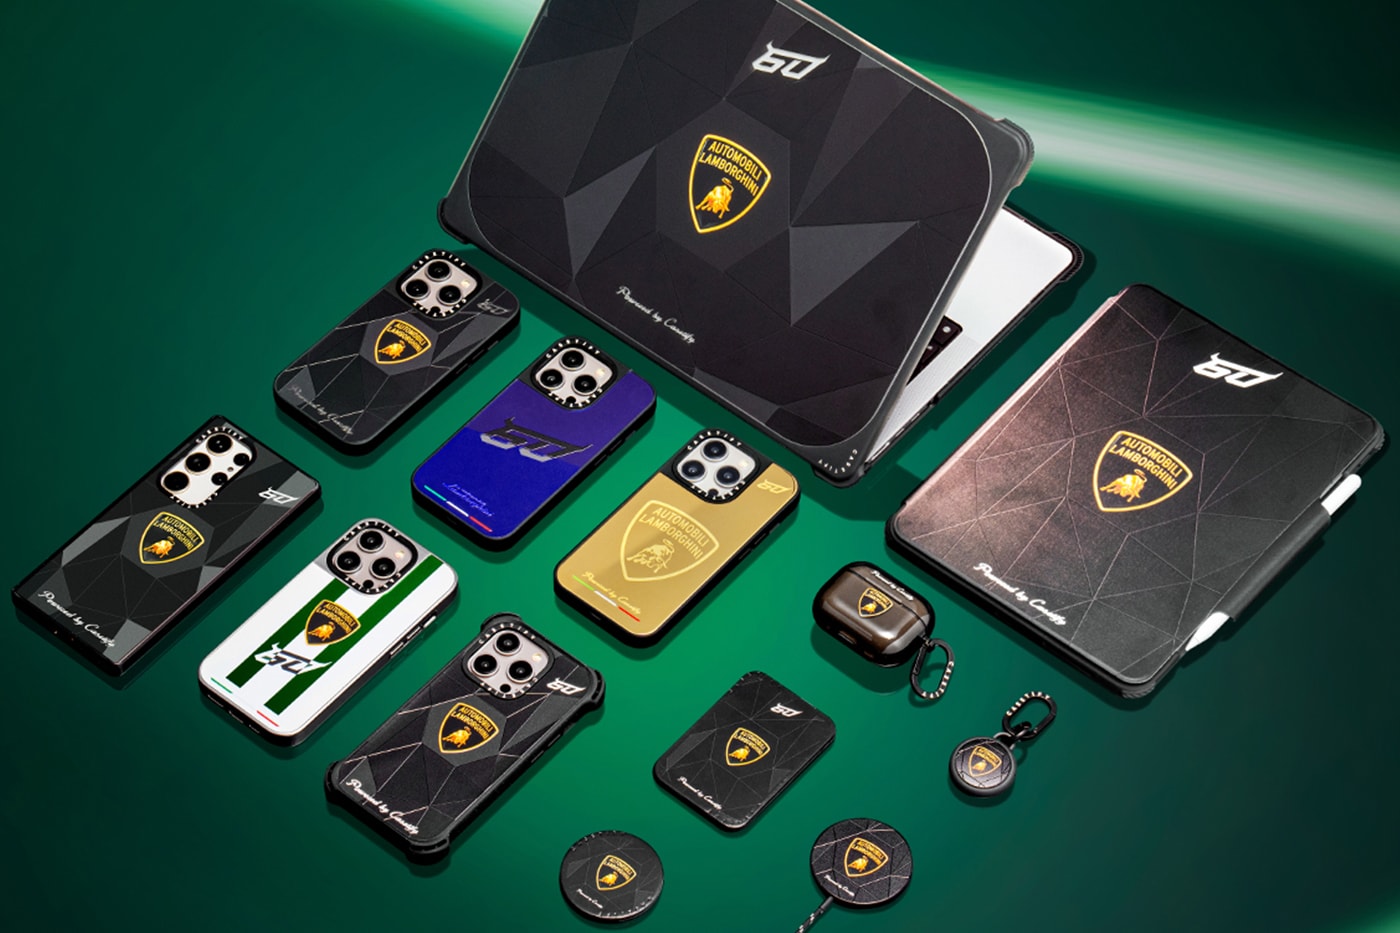 Automobili Lamborghini CASETiFY Collection Release Info Date Buy Price 